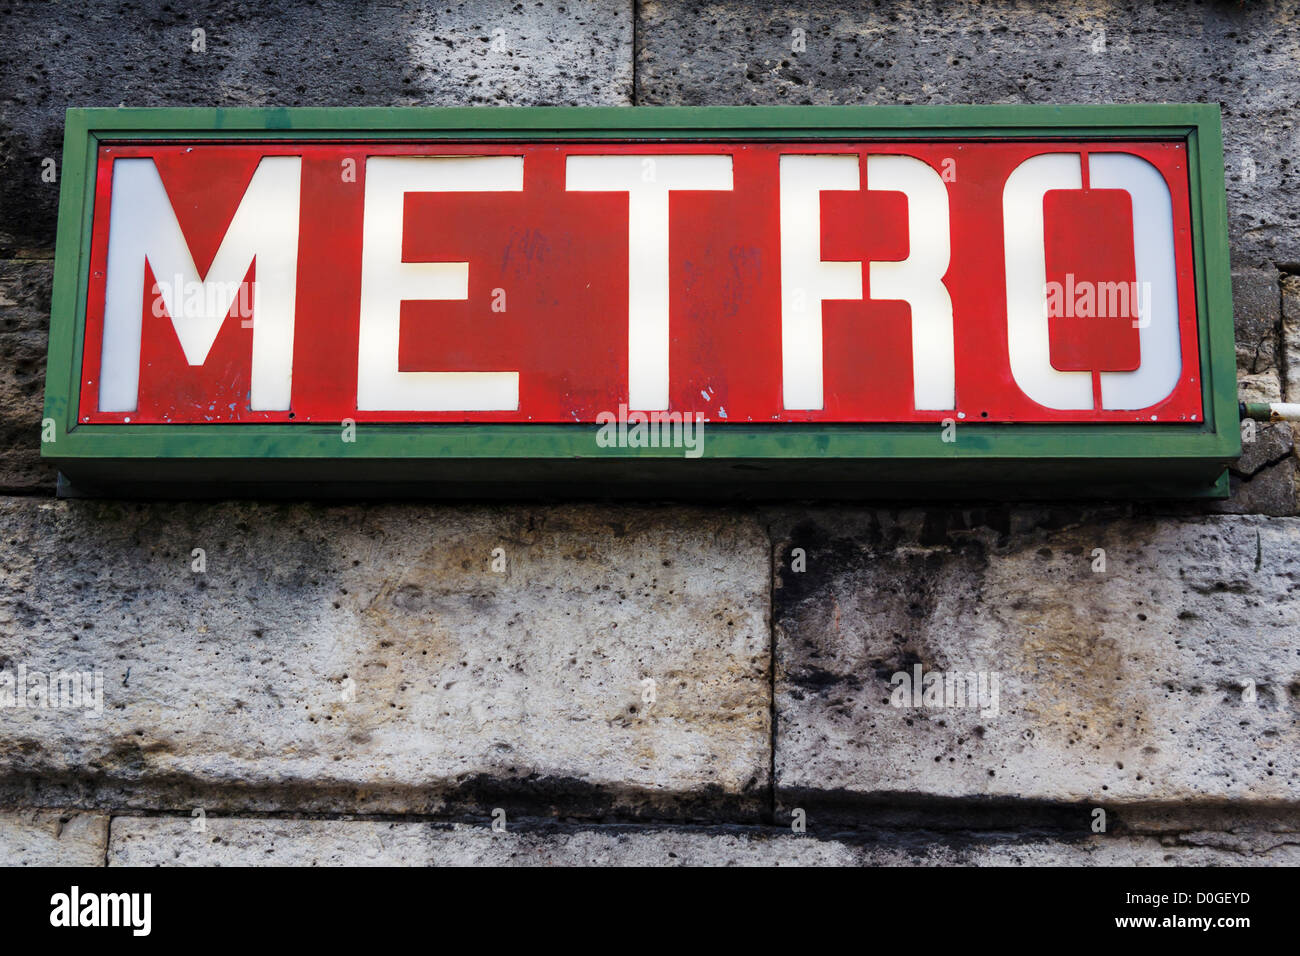 Paris Metro sign at Place de la Concorde, Paris, France Stock Photo